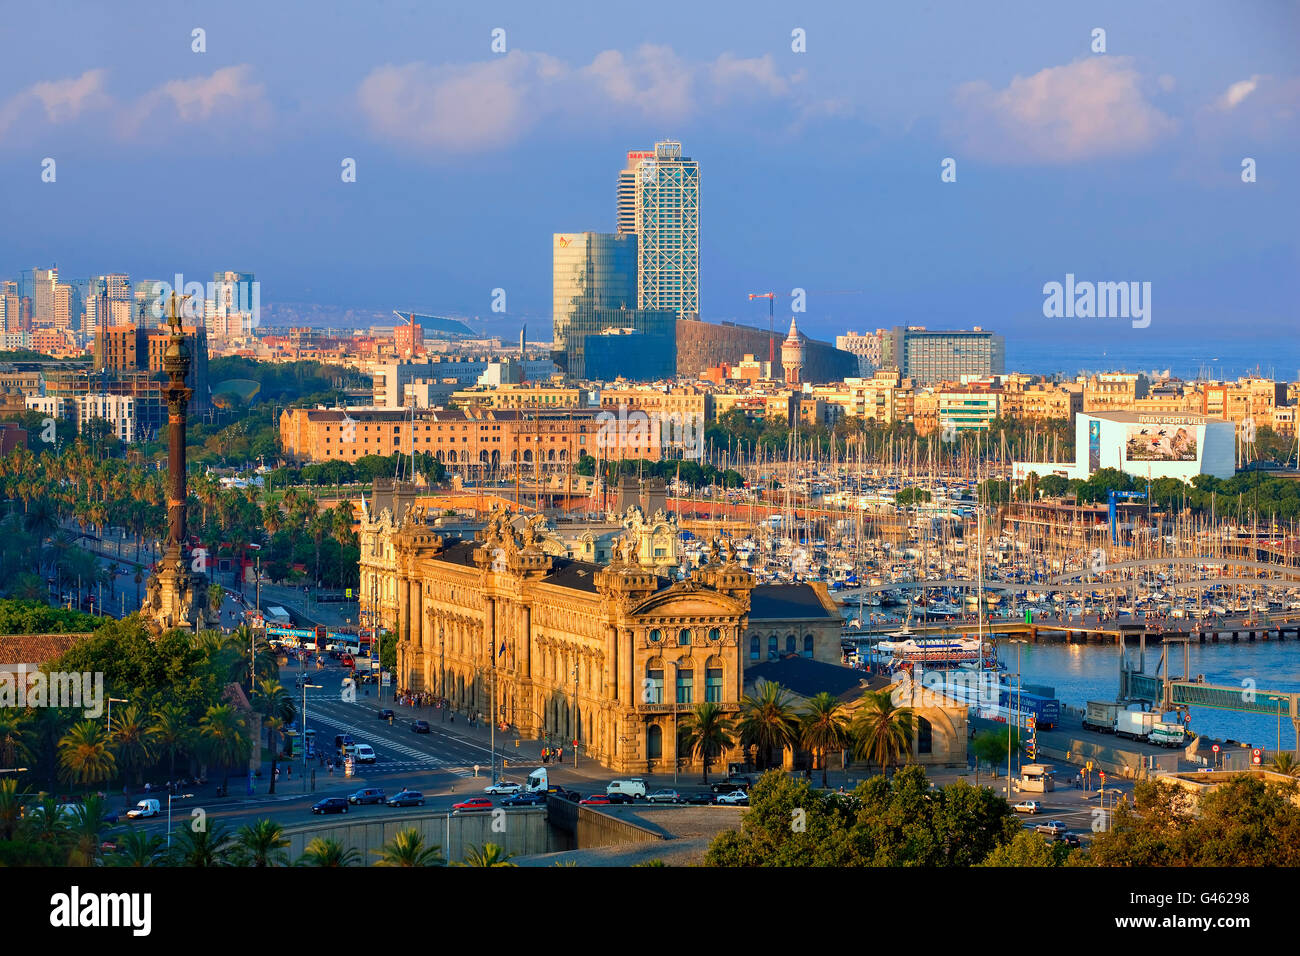 Überblick über Barcelona Hafen Miramar belvedere Stockfoto